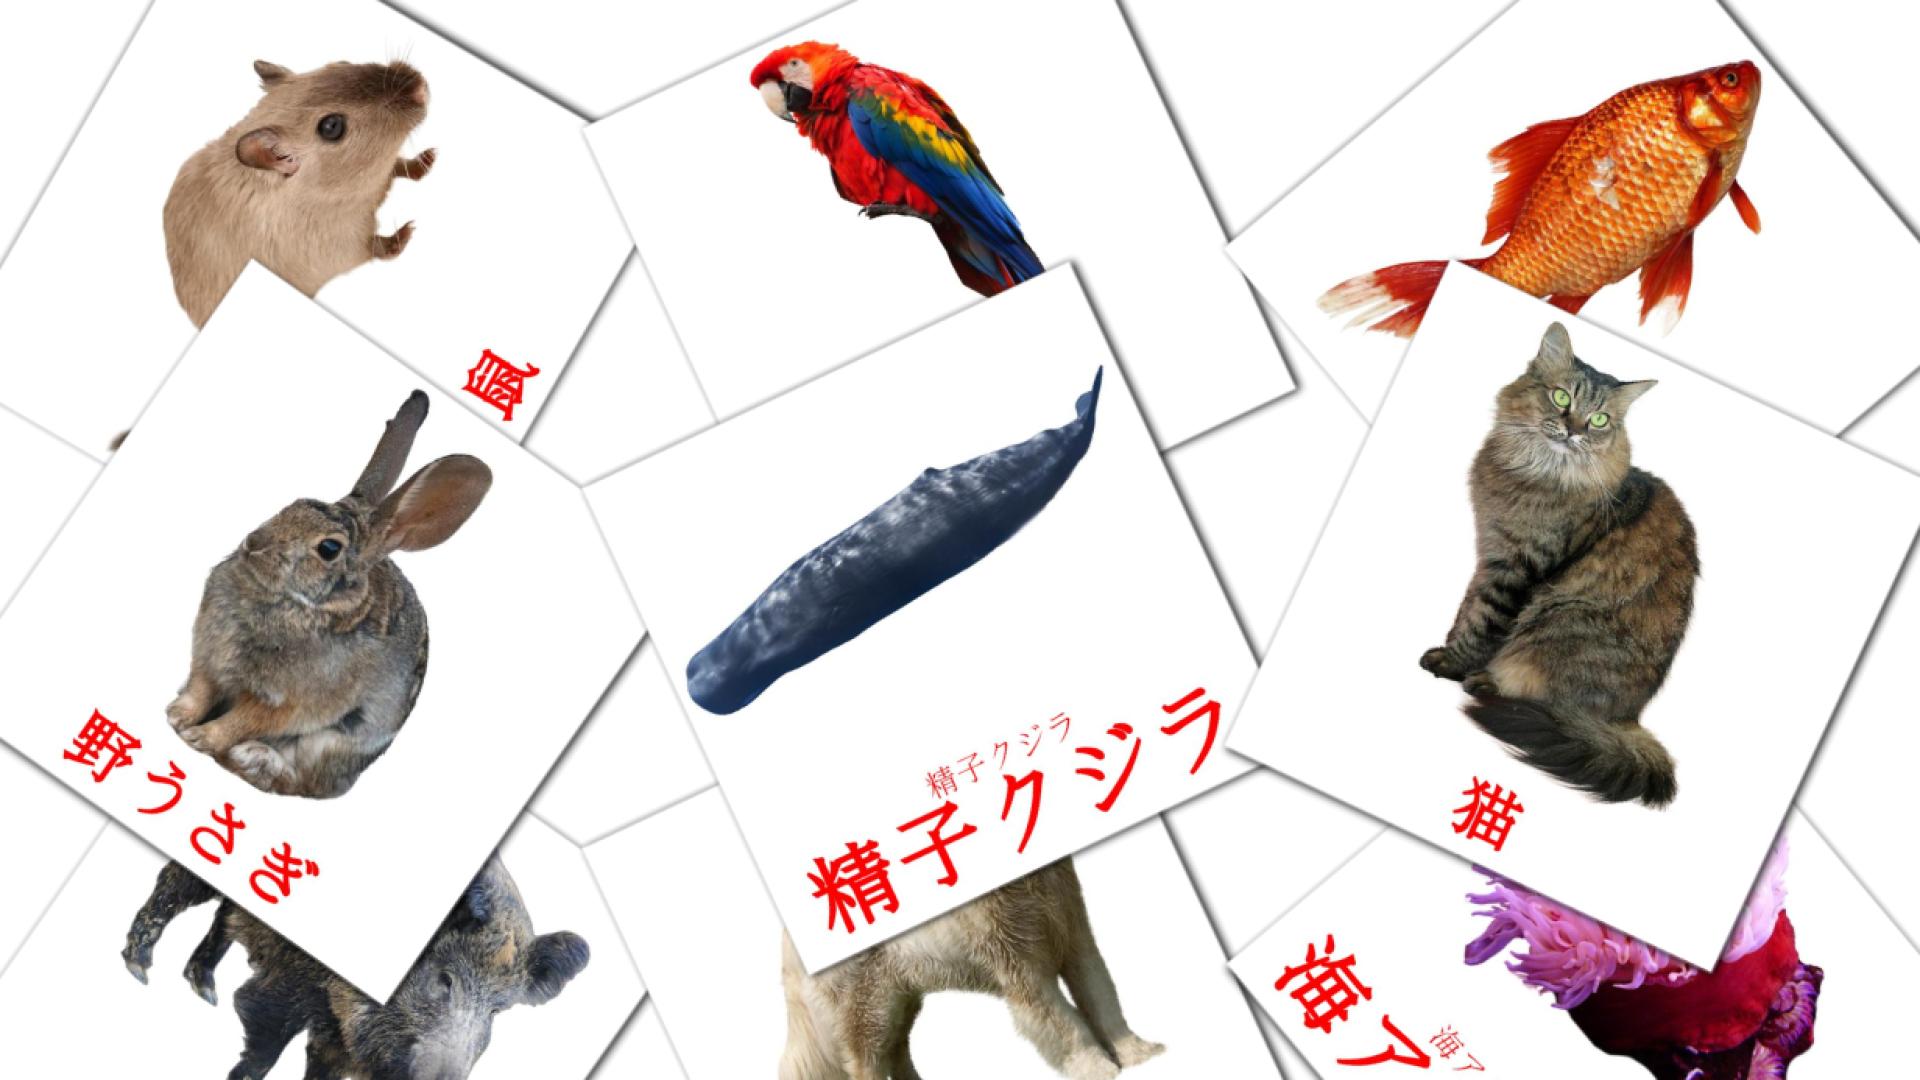 Fiches de vocabulaire japonaises sur 動物 - どうぶつ